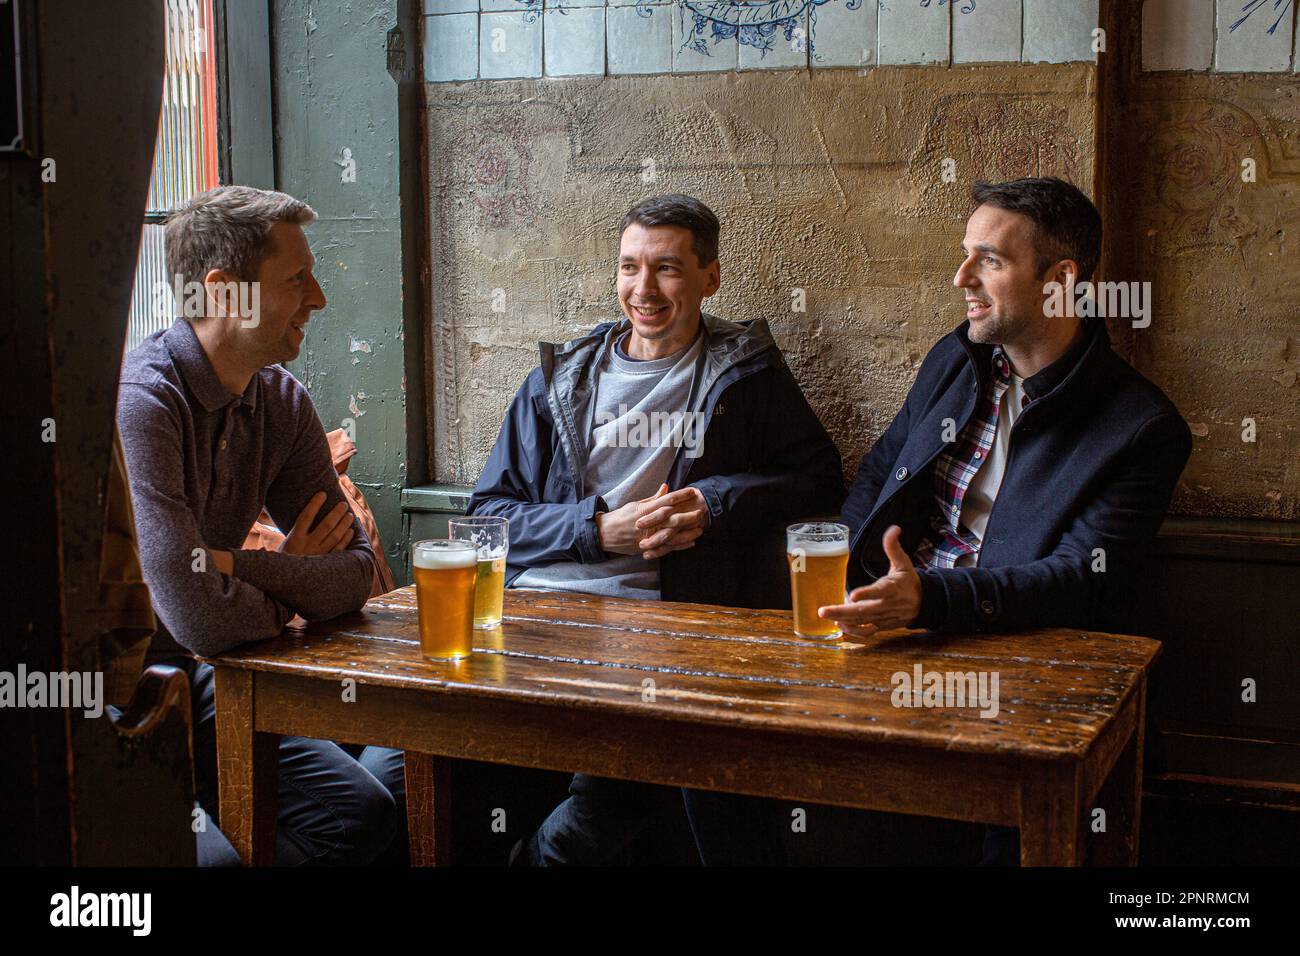 Freunde, die Bier trinken in der Kneipe, der Heiligen Taverne, in der Britton Street, Clerkenwell, London, England, Großbritannien. Stockfoto